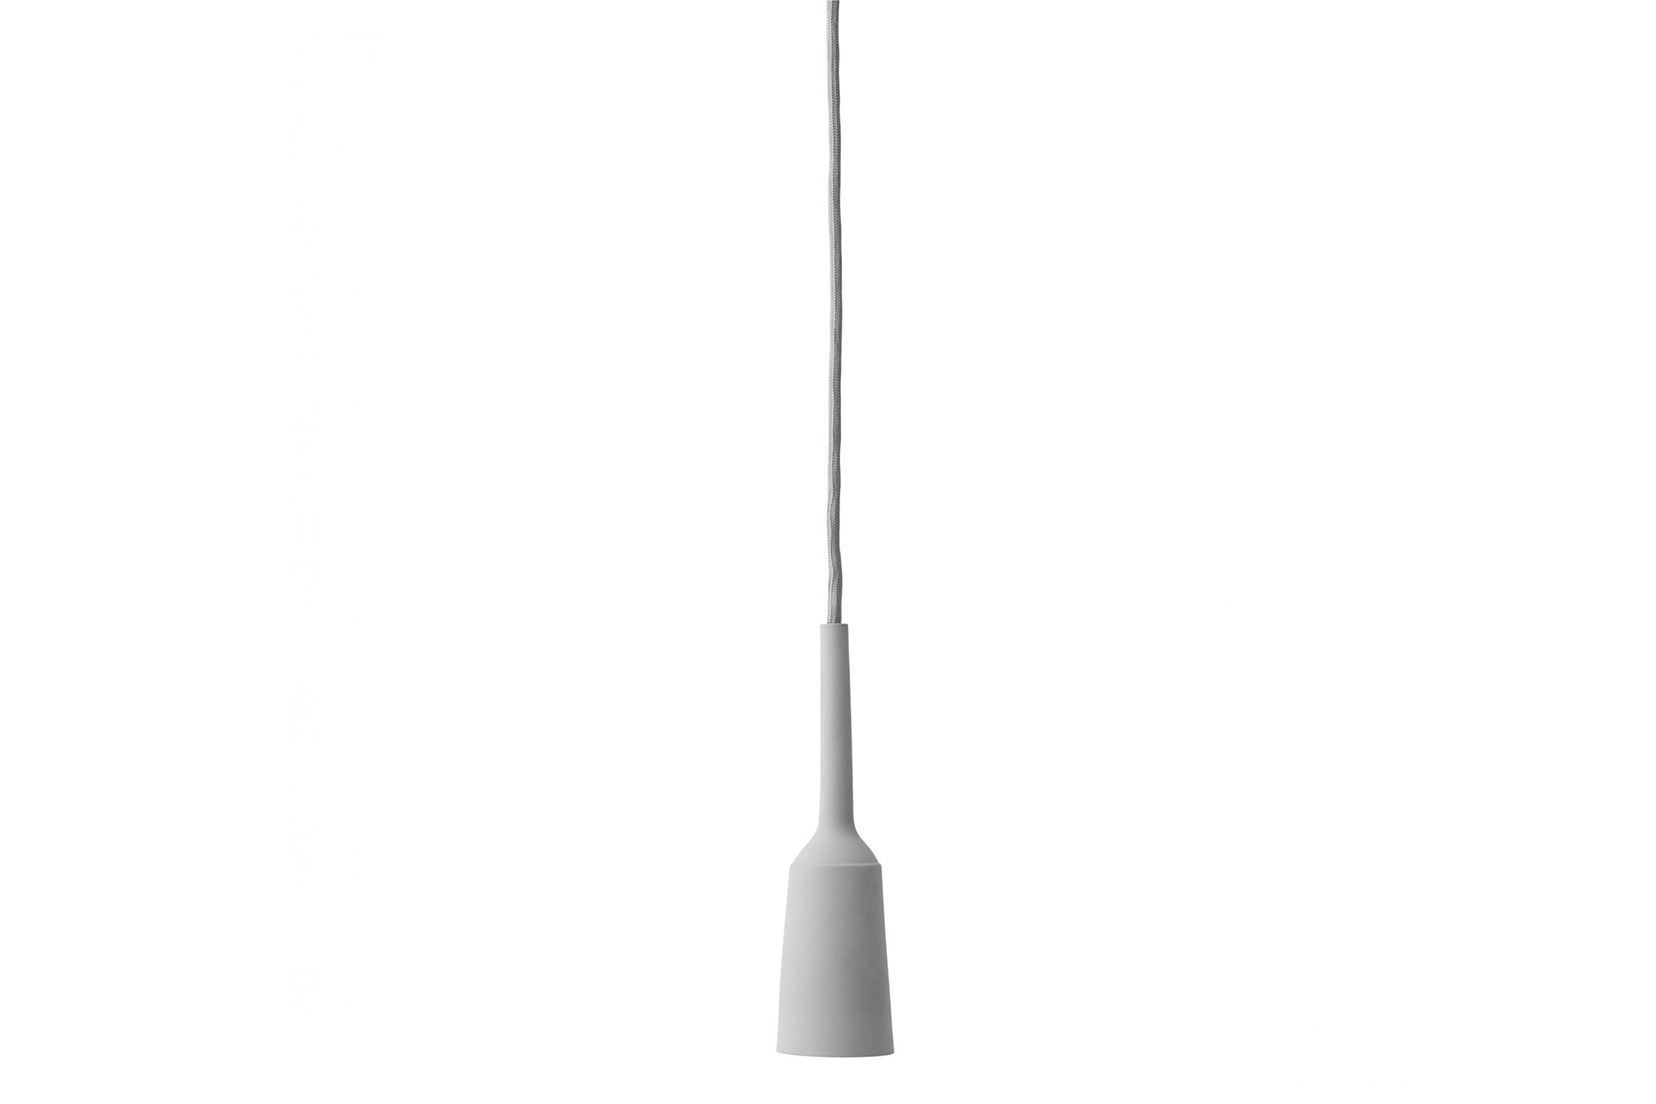 Hanging Lamp Plug Socket Porcelain Charging Device Lotte Douwes Menu Stockholm Furniture Fair